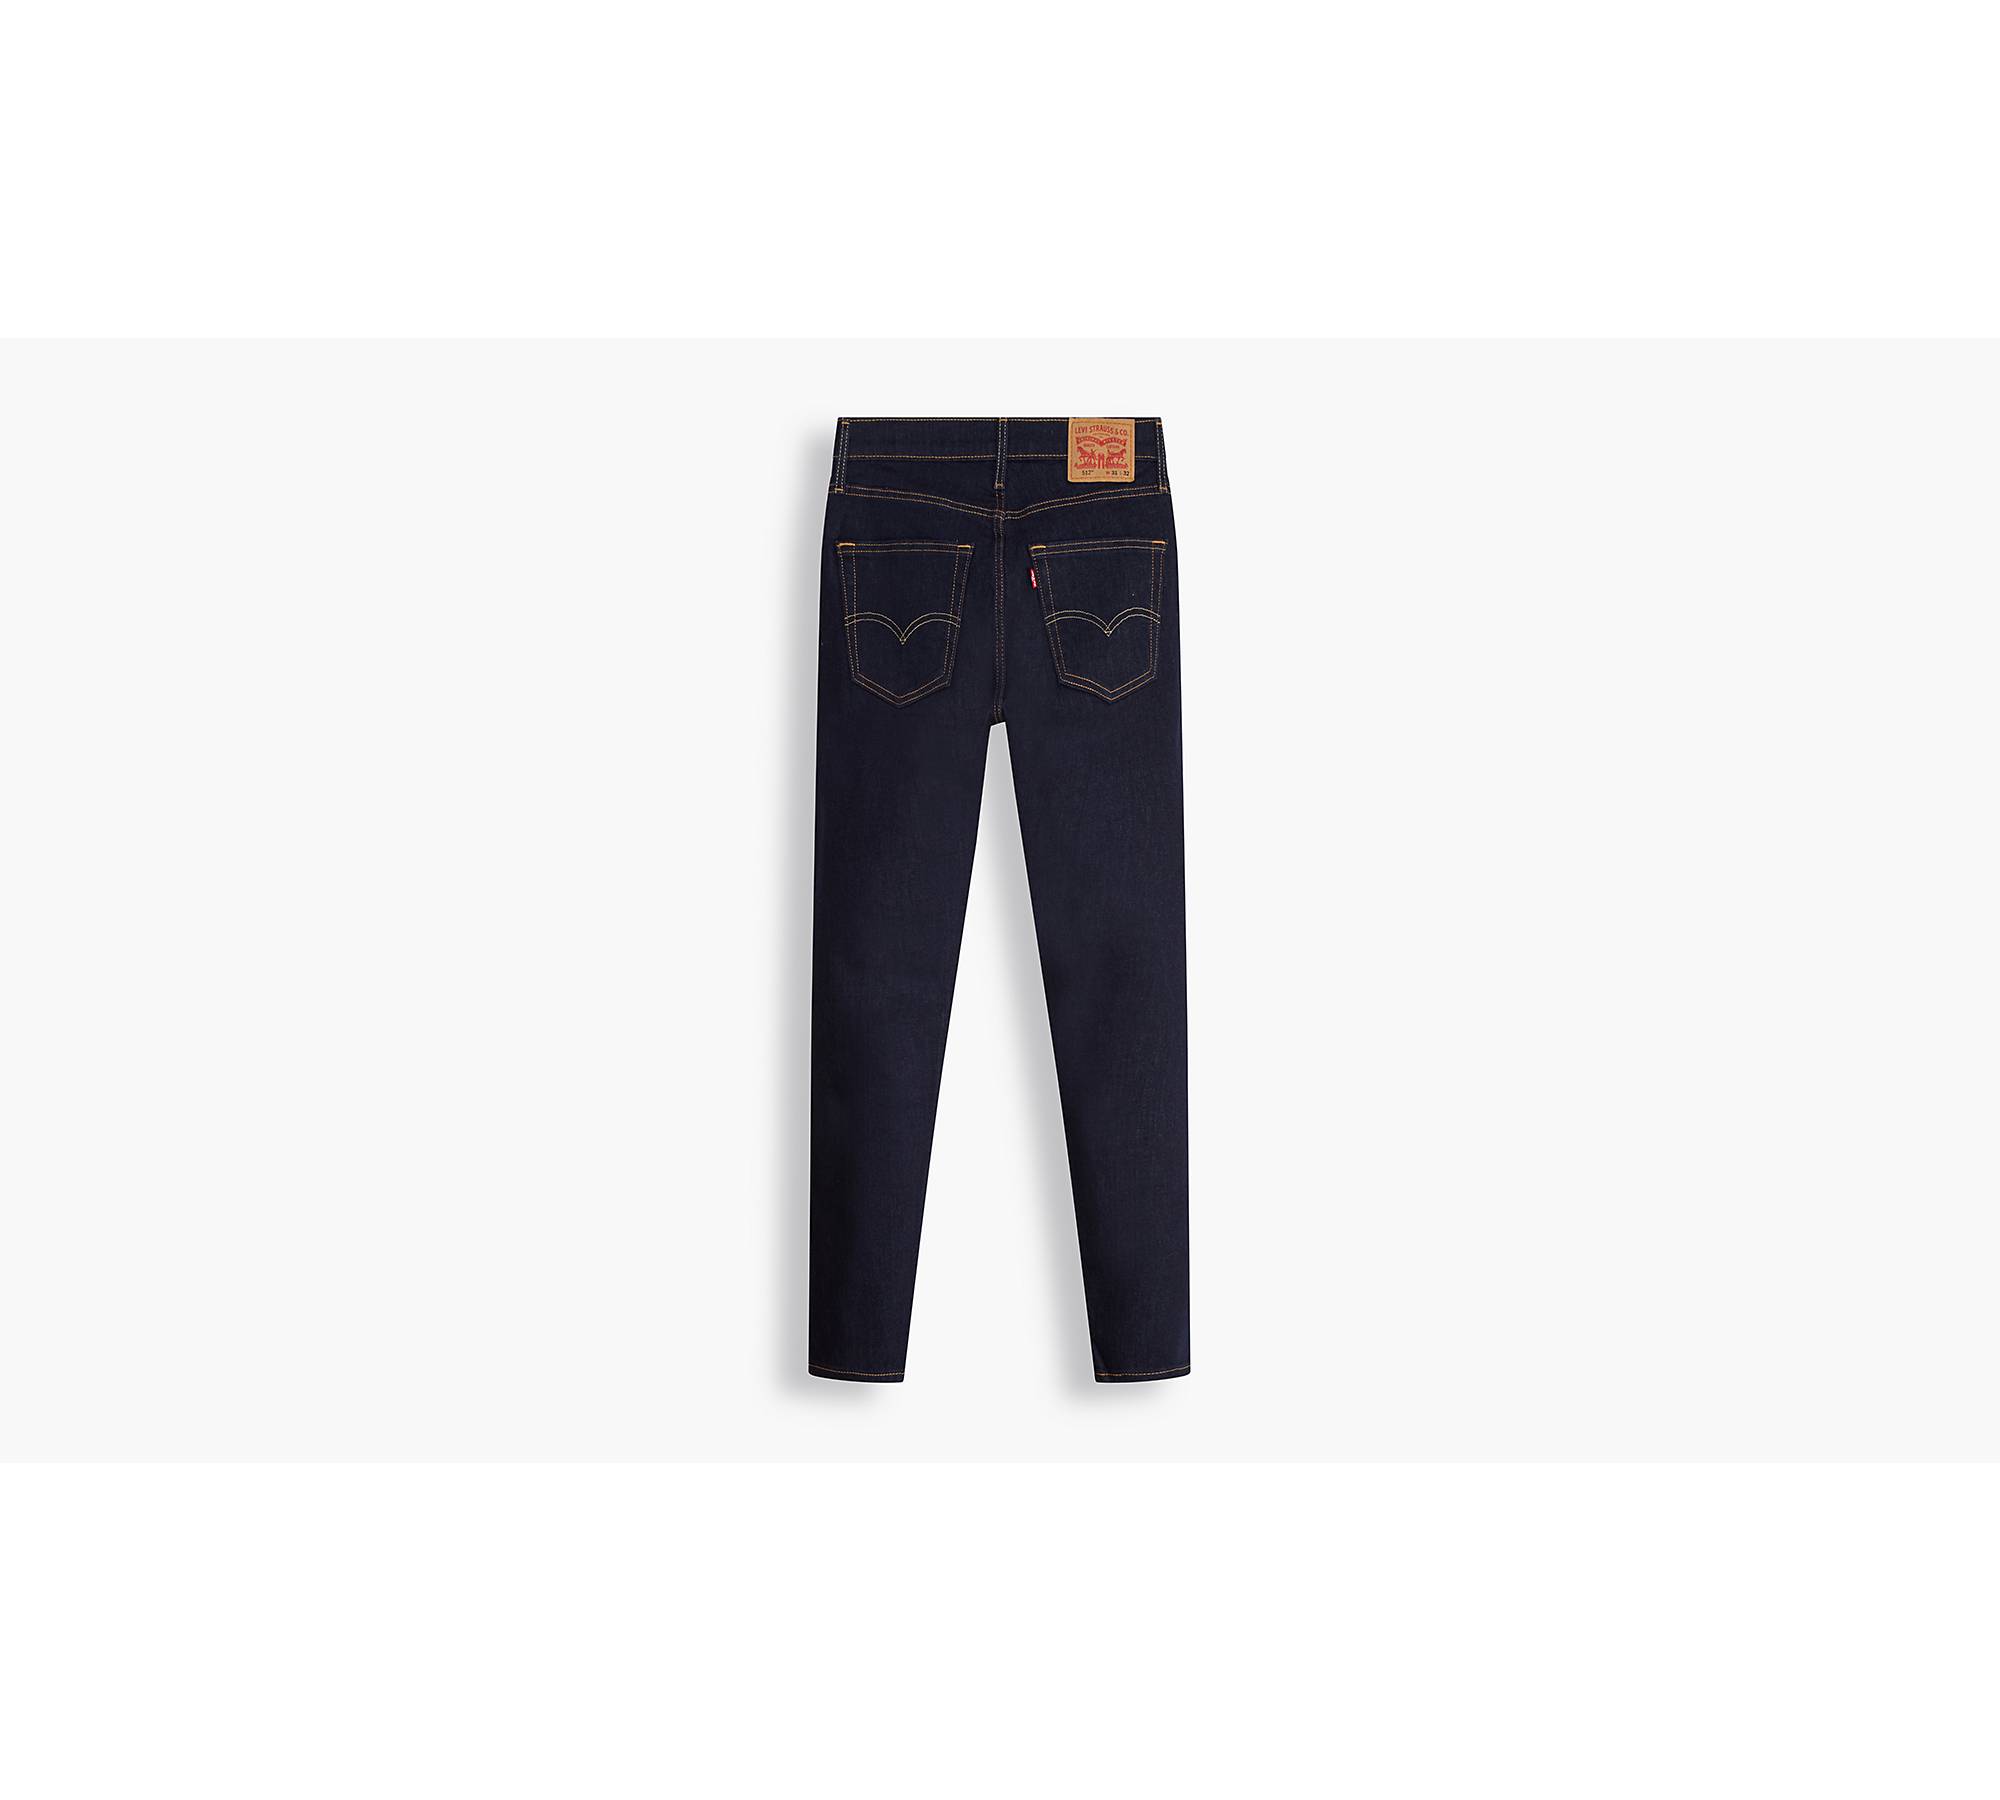 512™ Slim Taper Men's Jeans - Dark Wash | Levi's® US